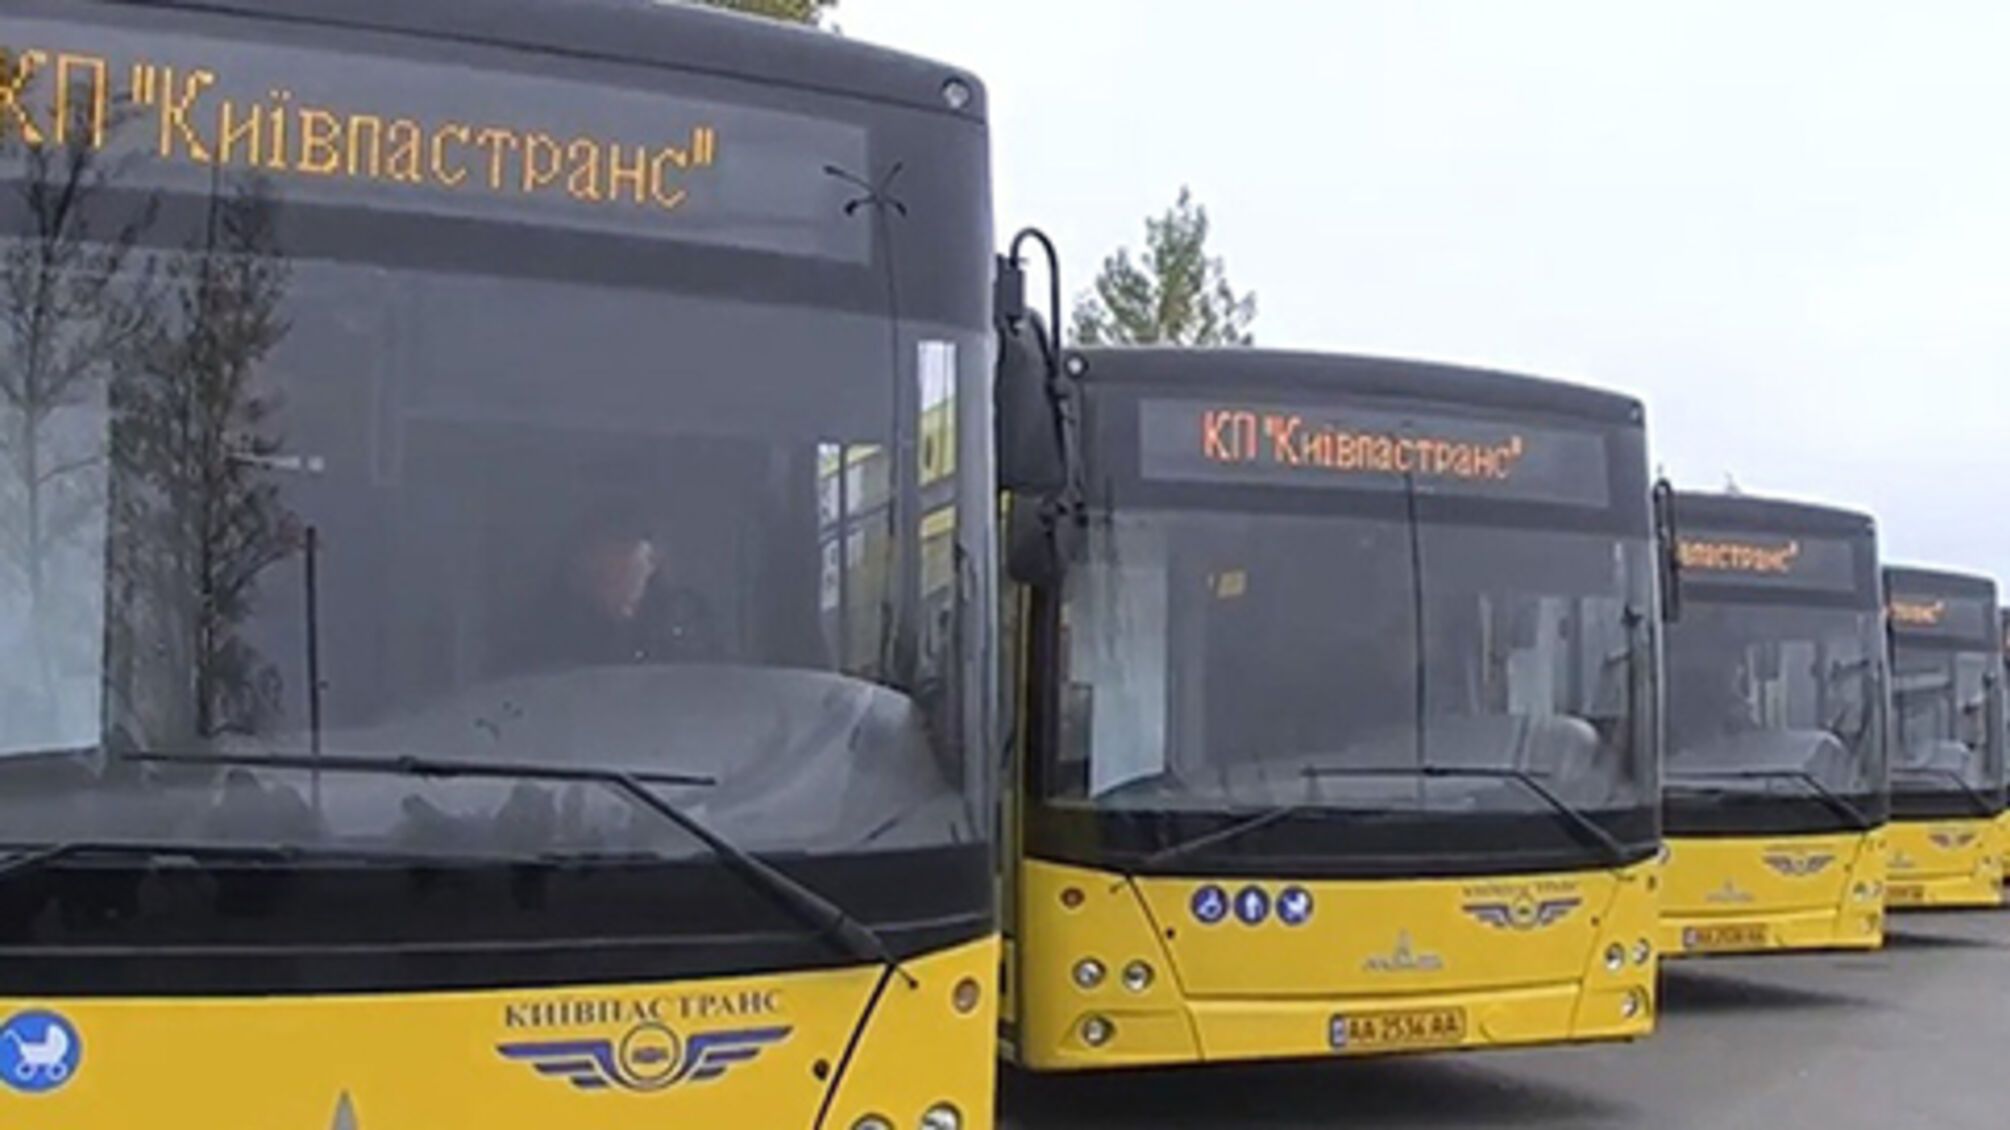 Следующая остановка – укрытие: в Киеве во время тревоги общественный транспорт будет ехать в укрытие